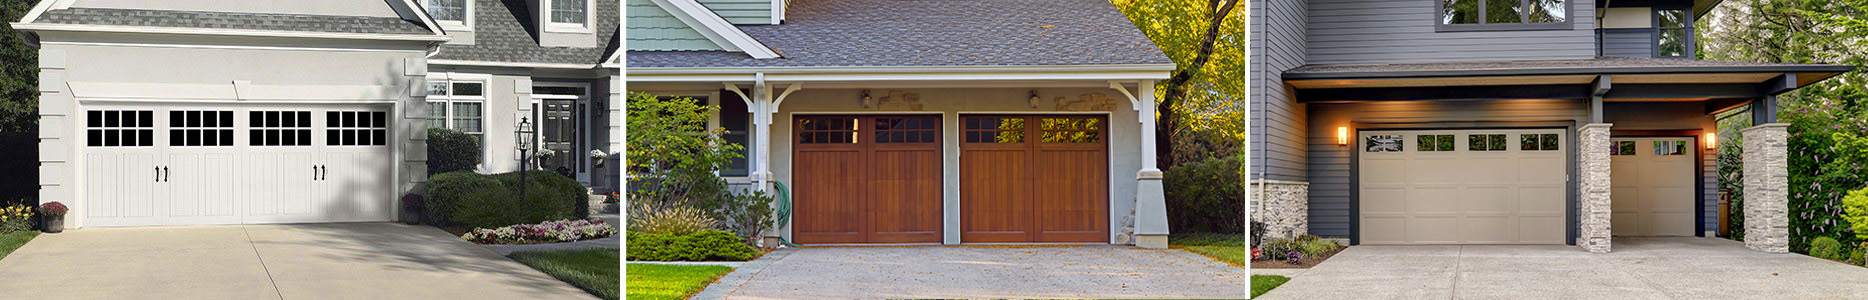 Garage door header image